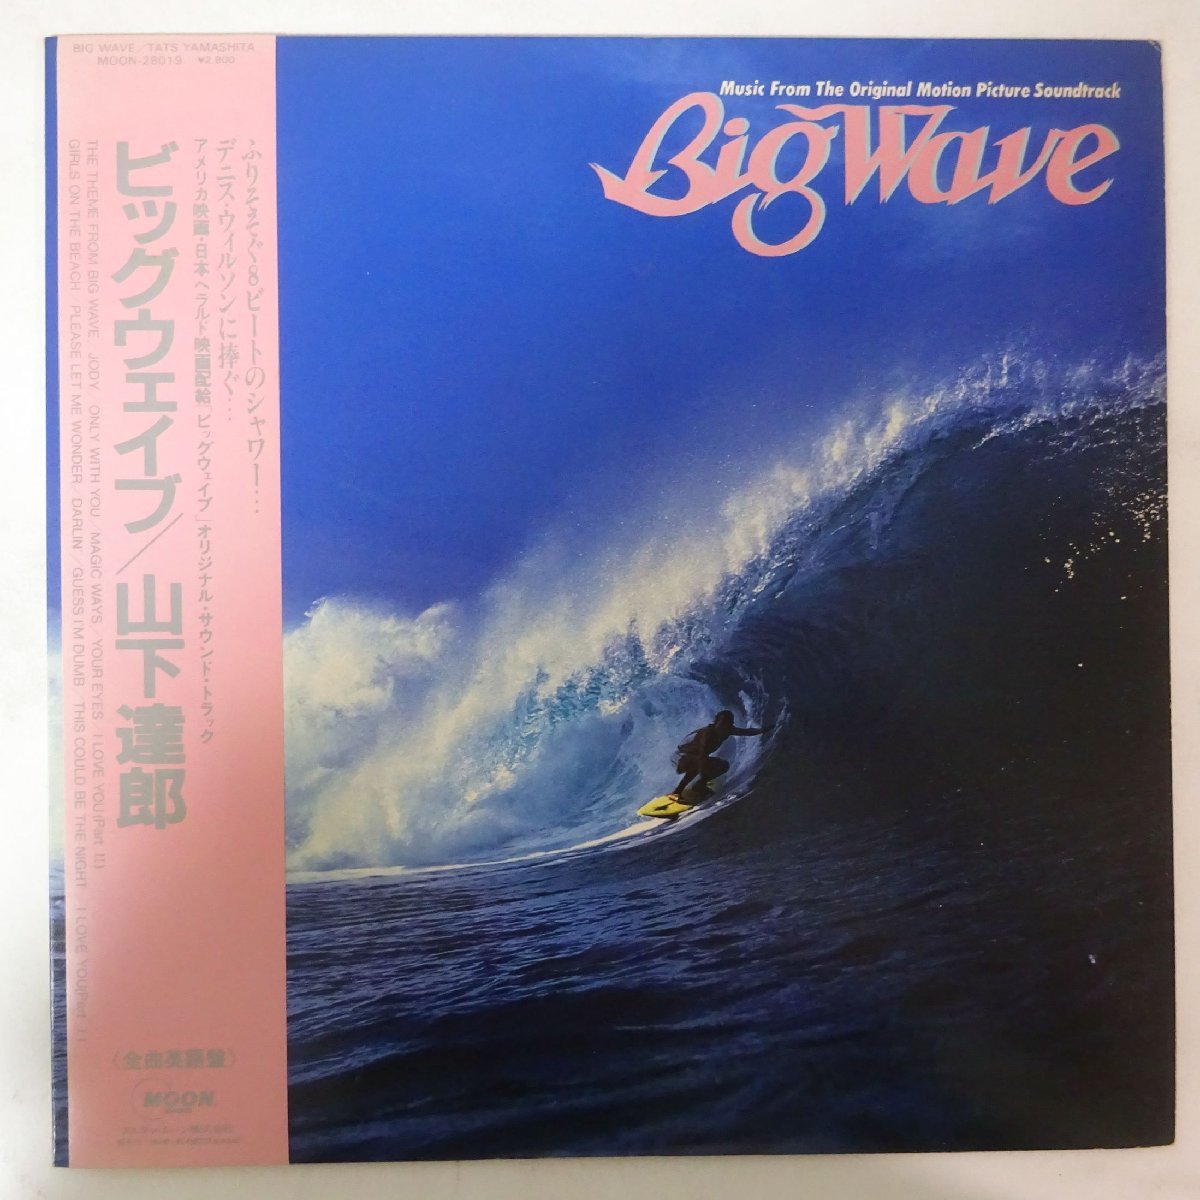 ヤフオク! -「山下達郎 big wave」(レコード) の落札相場・落札価格